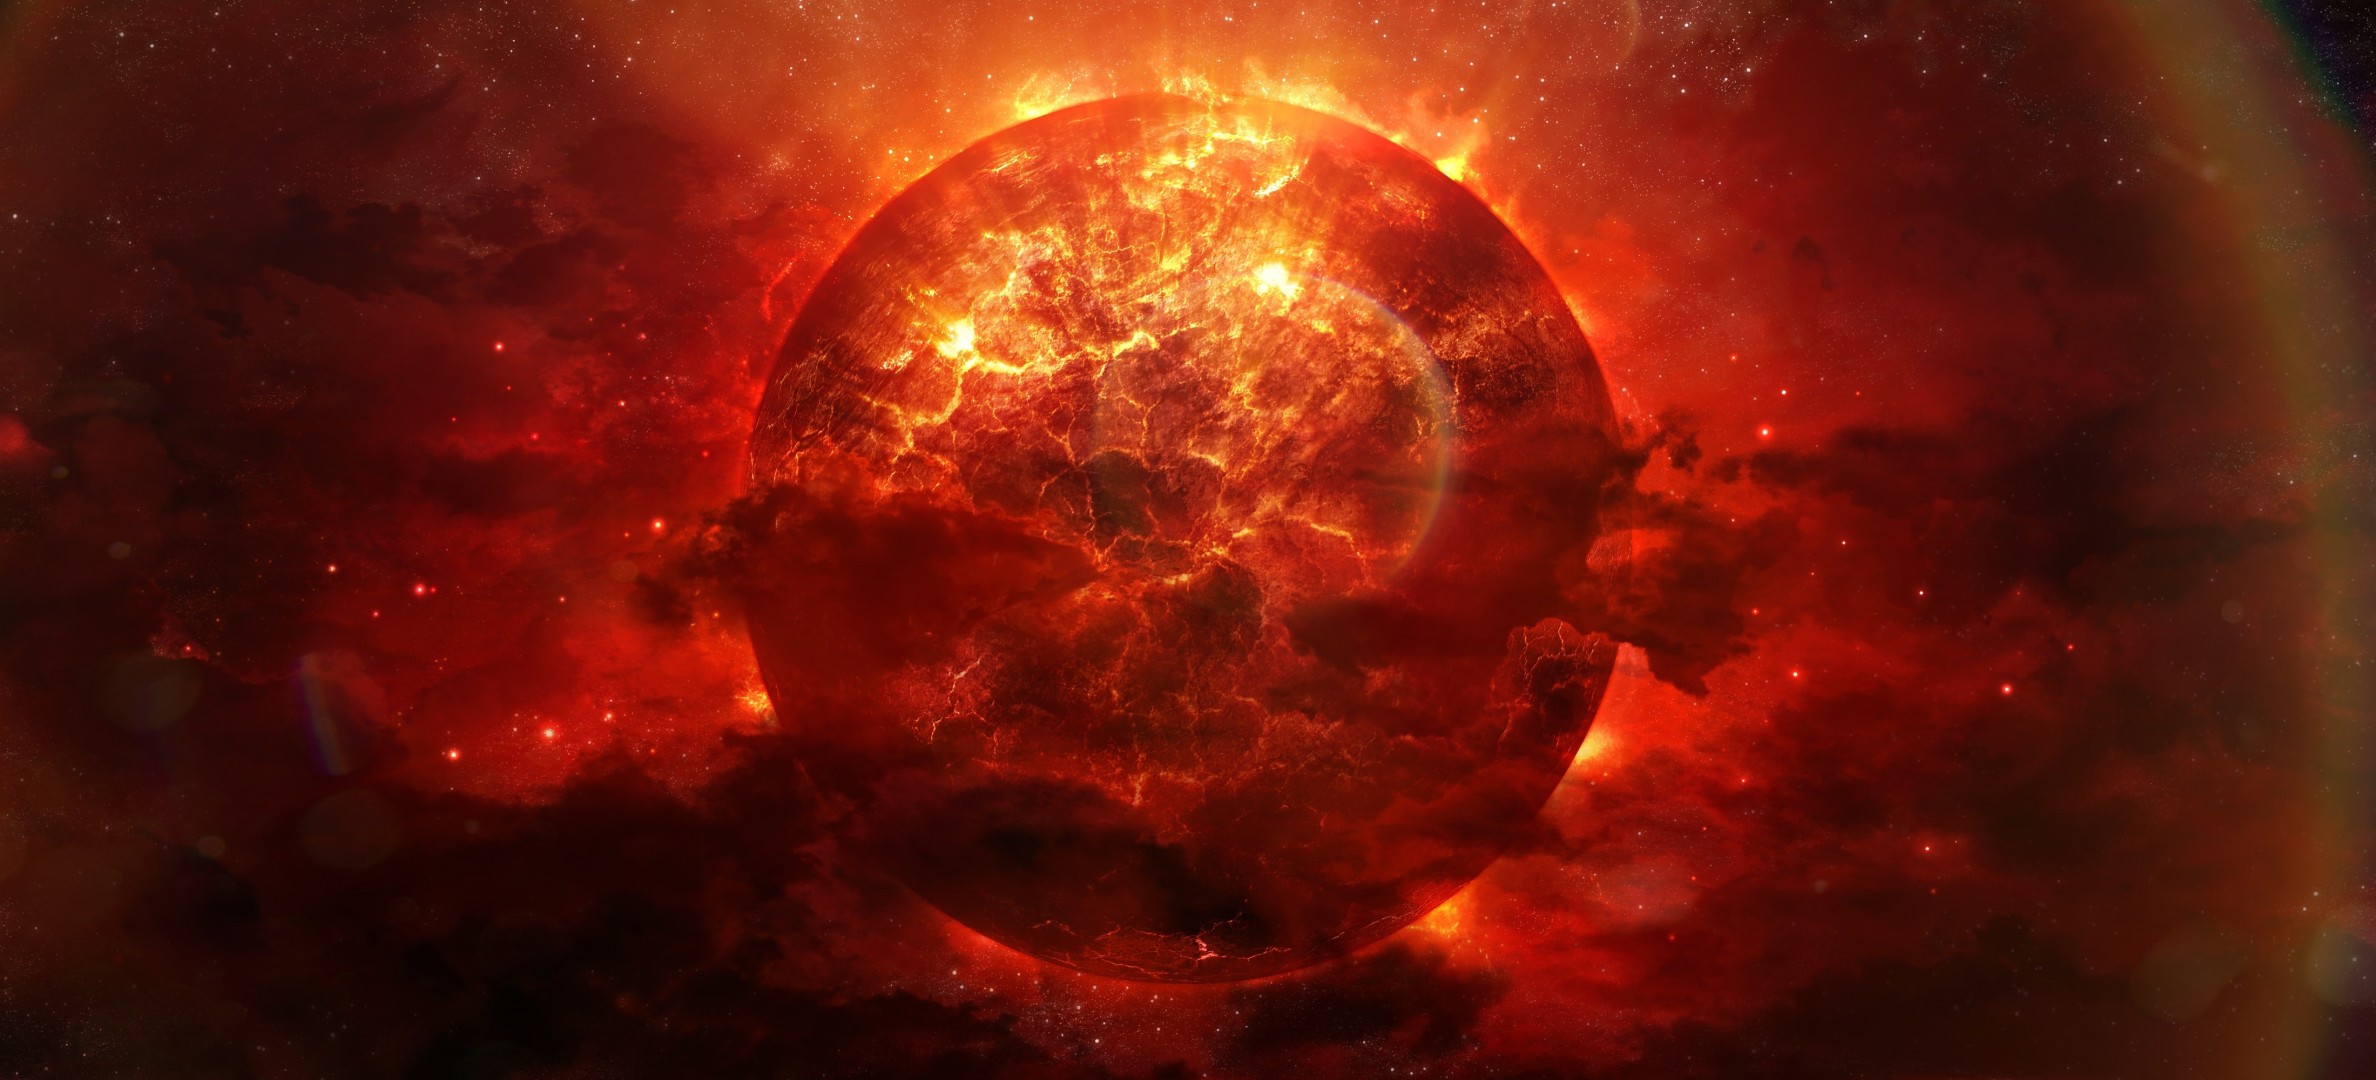 арт взрыв красный трещины энергия туманность огонь планета космос разломы